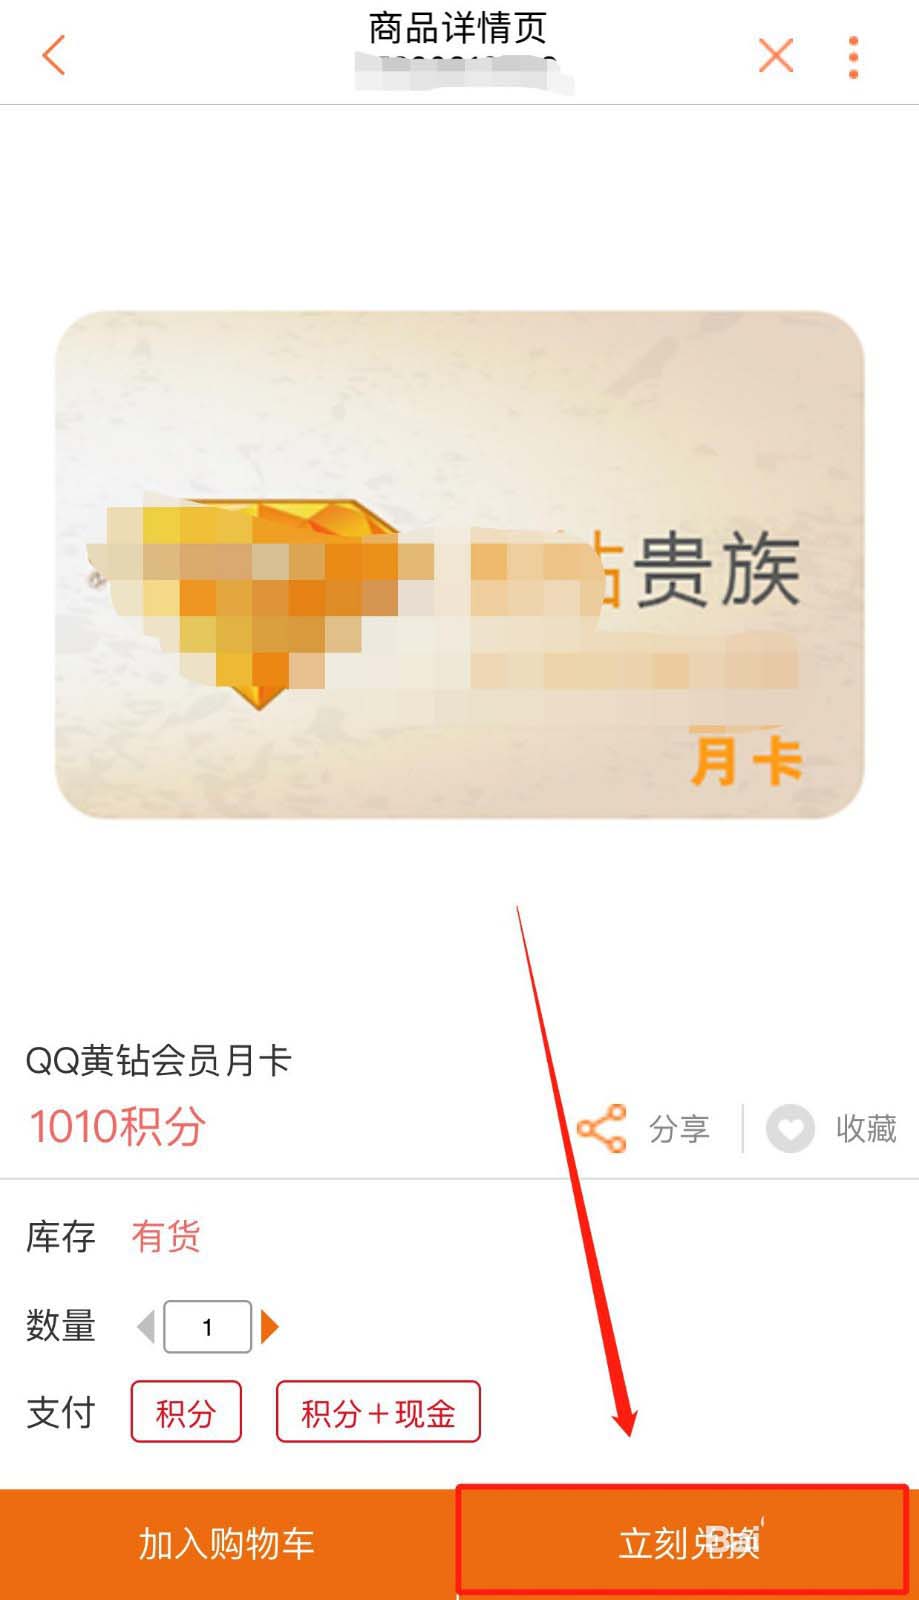 联通手机营业厅积分怎么免费兑换QQ黄钻会员月卡?